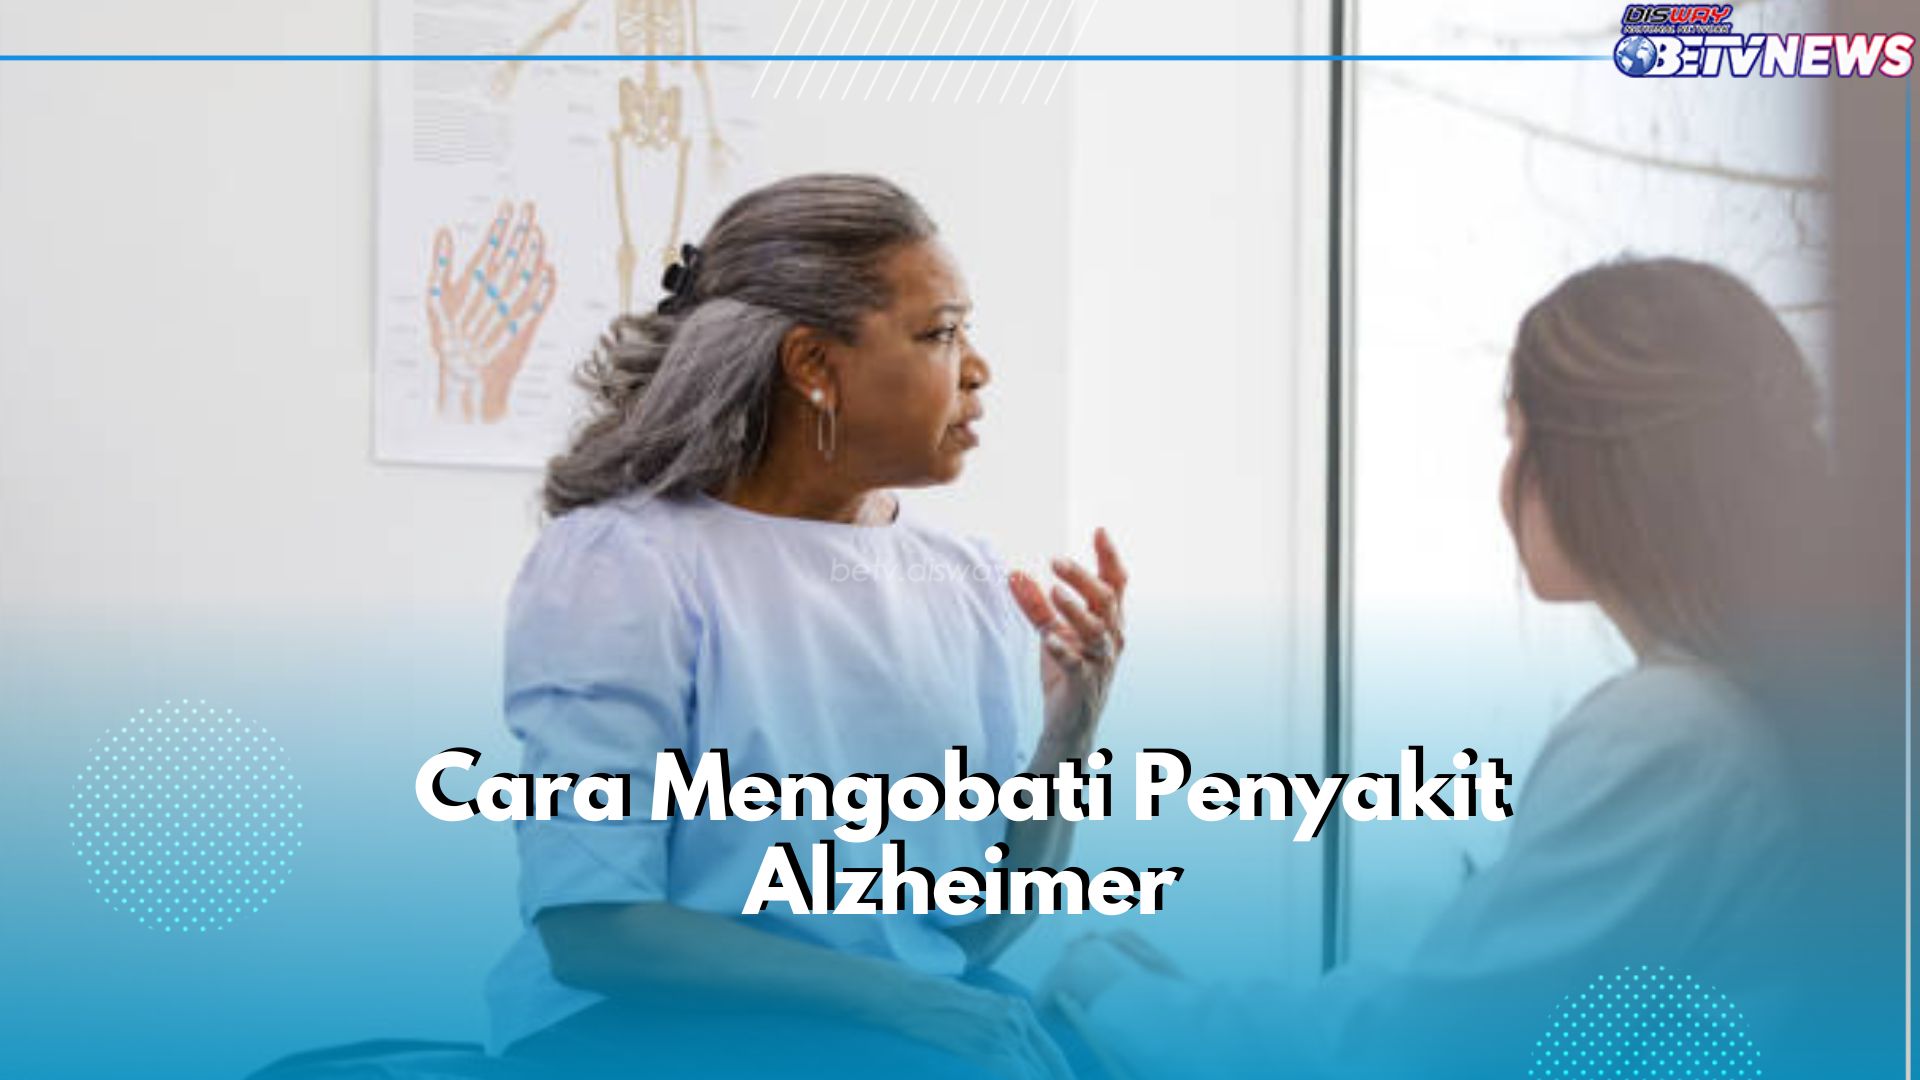 Pengobatan Alzheimer : Konsumsi Obat hingga Terapi, Simak Rinciannya